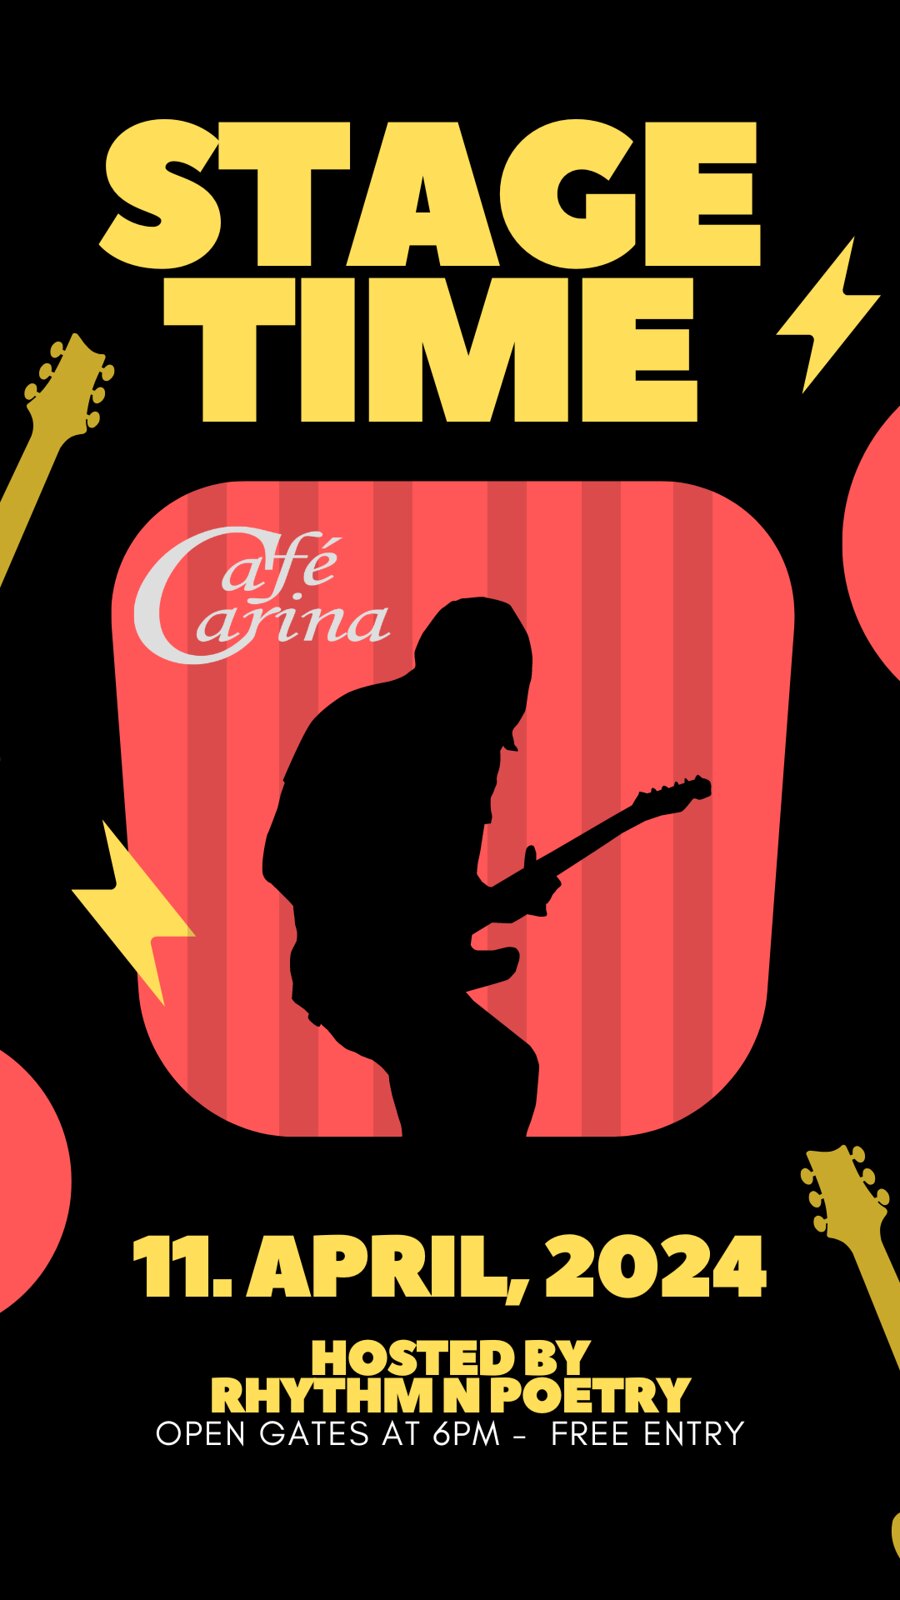 RNP Stagetime am 11. April 2024 @ Café Carina.